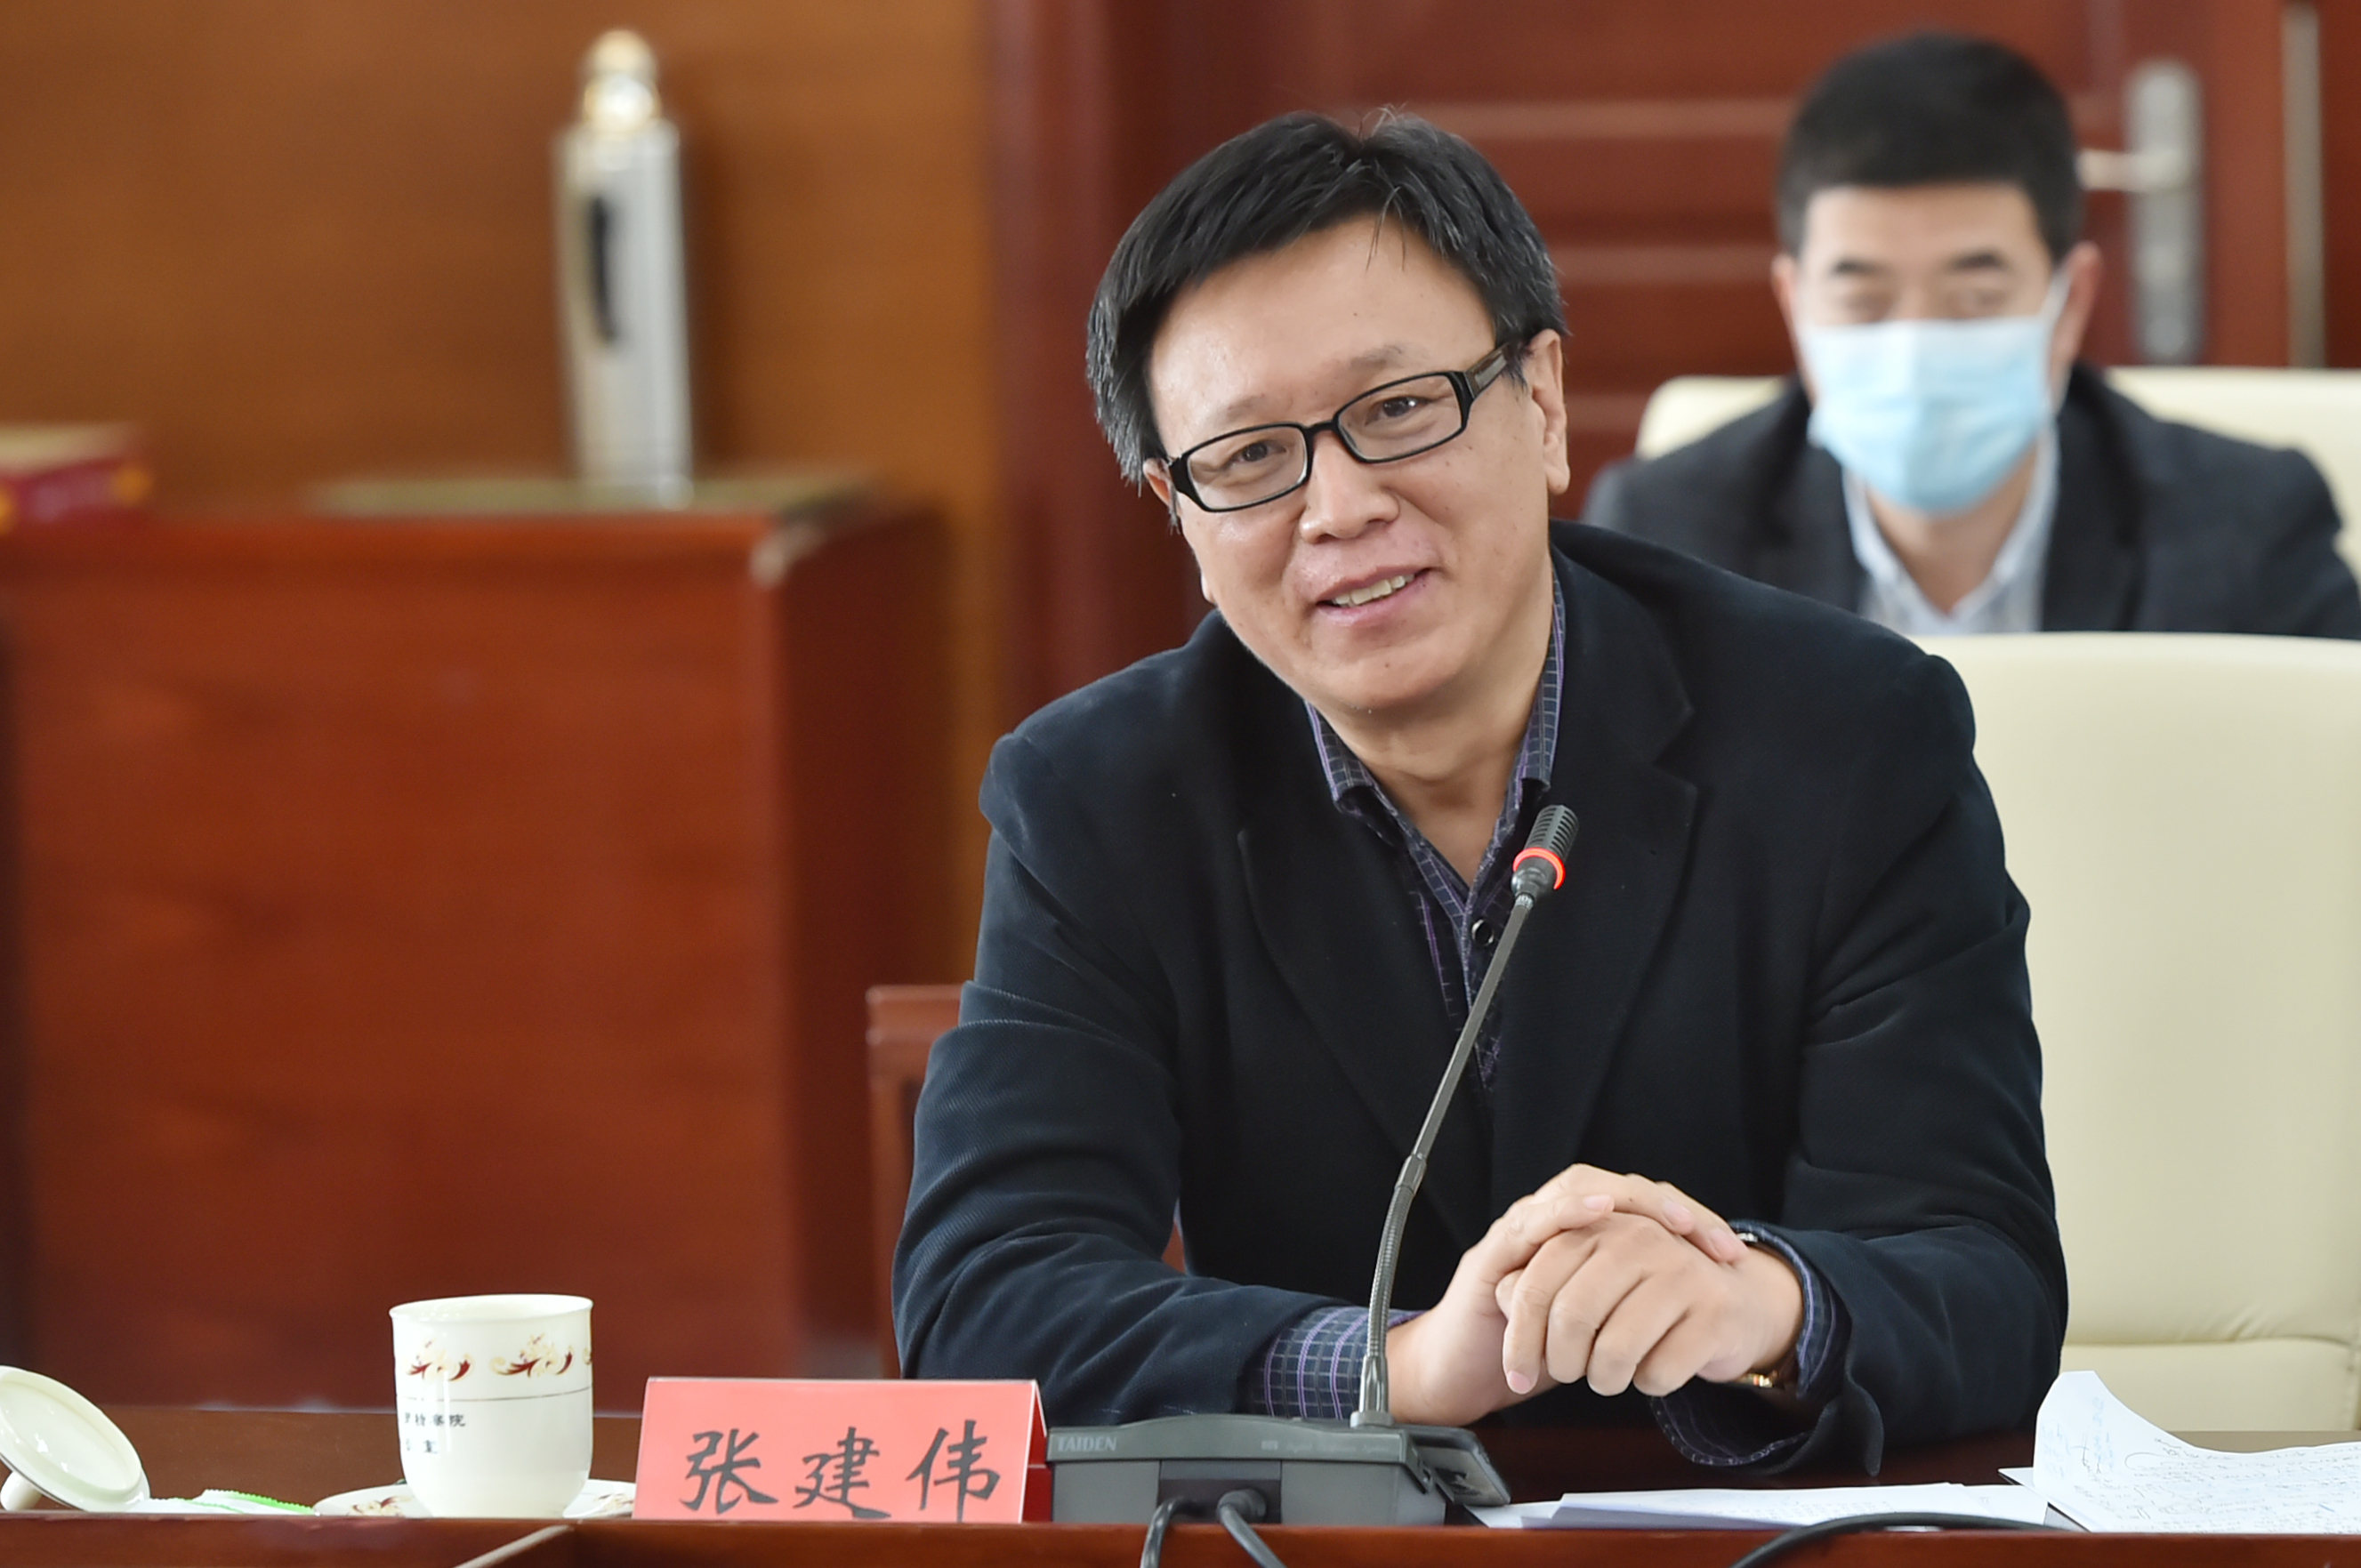 清华大学法学院教授 张建伟这次抗疫,是非司法重大事件中法治化程度最